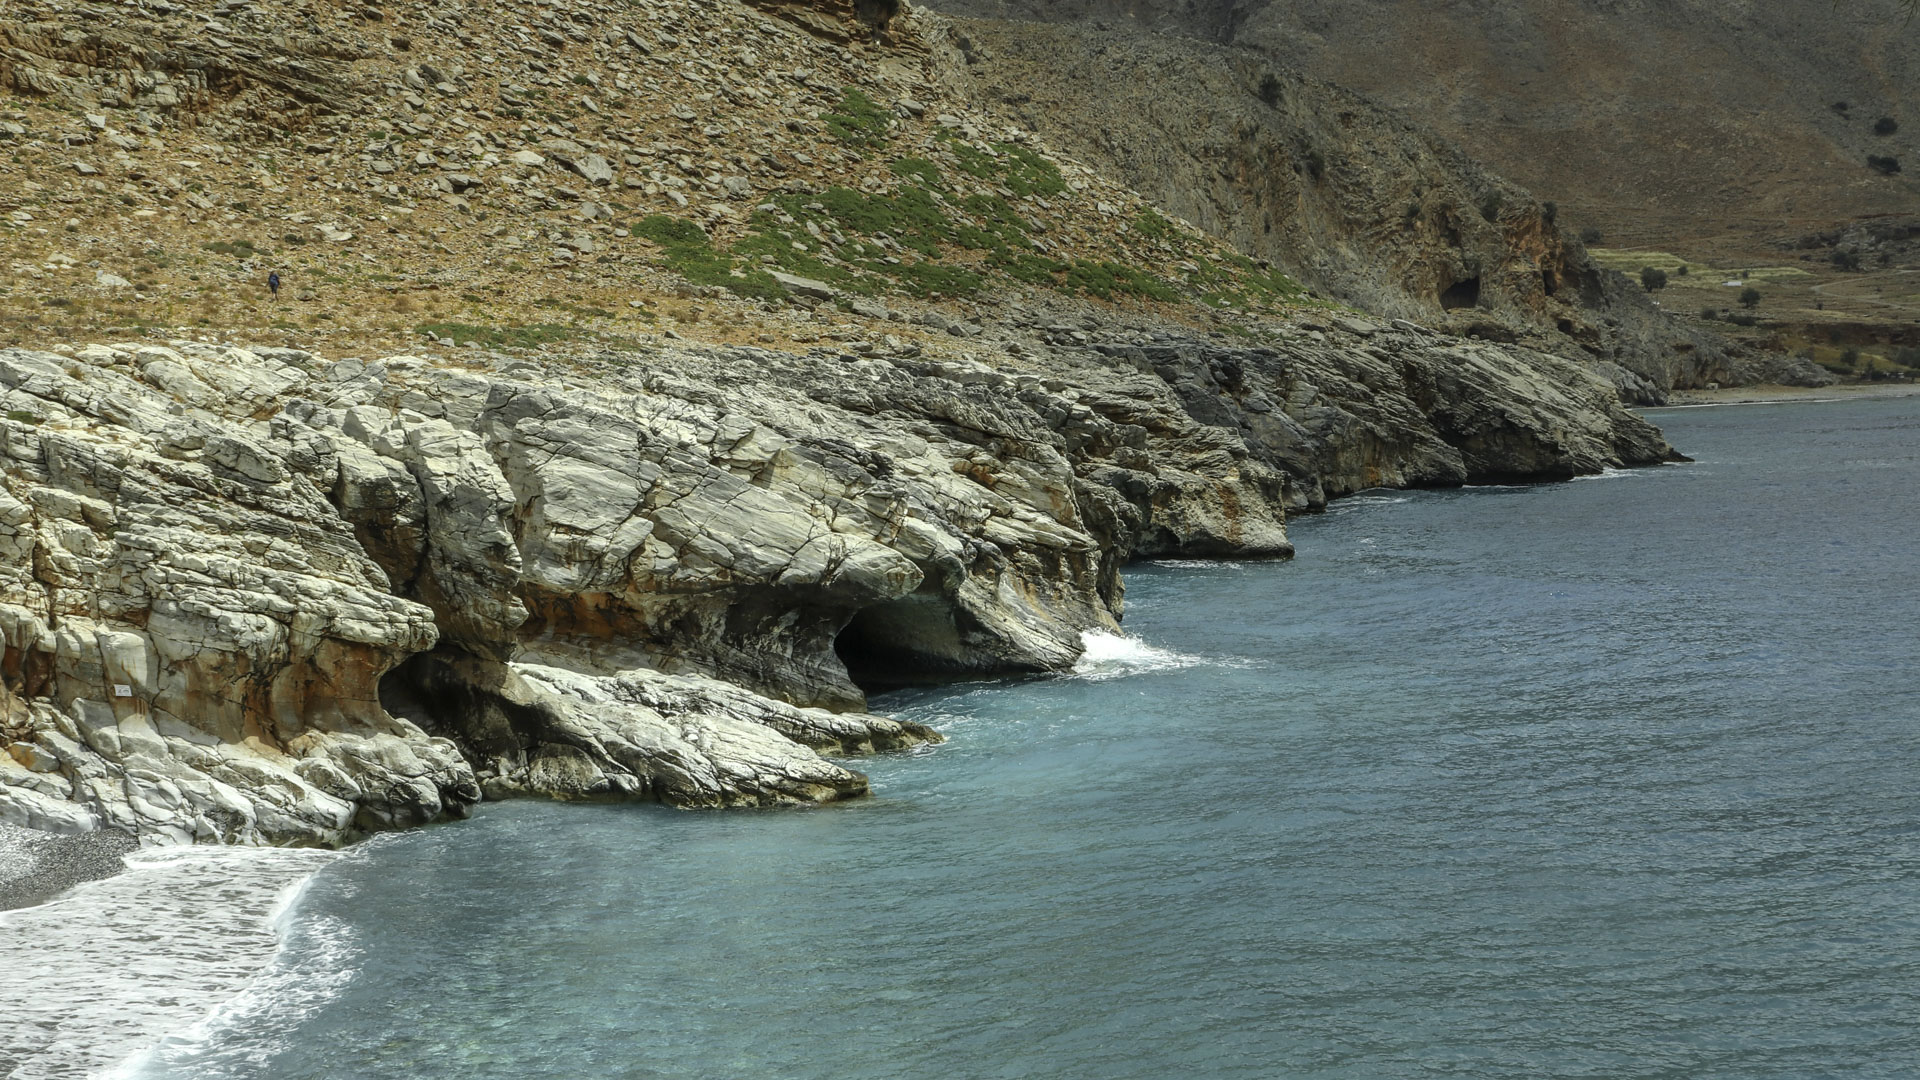 Alternative Crete - Travel and hiking in Crete